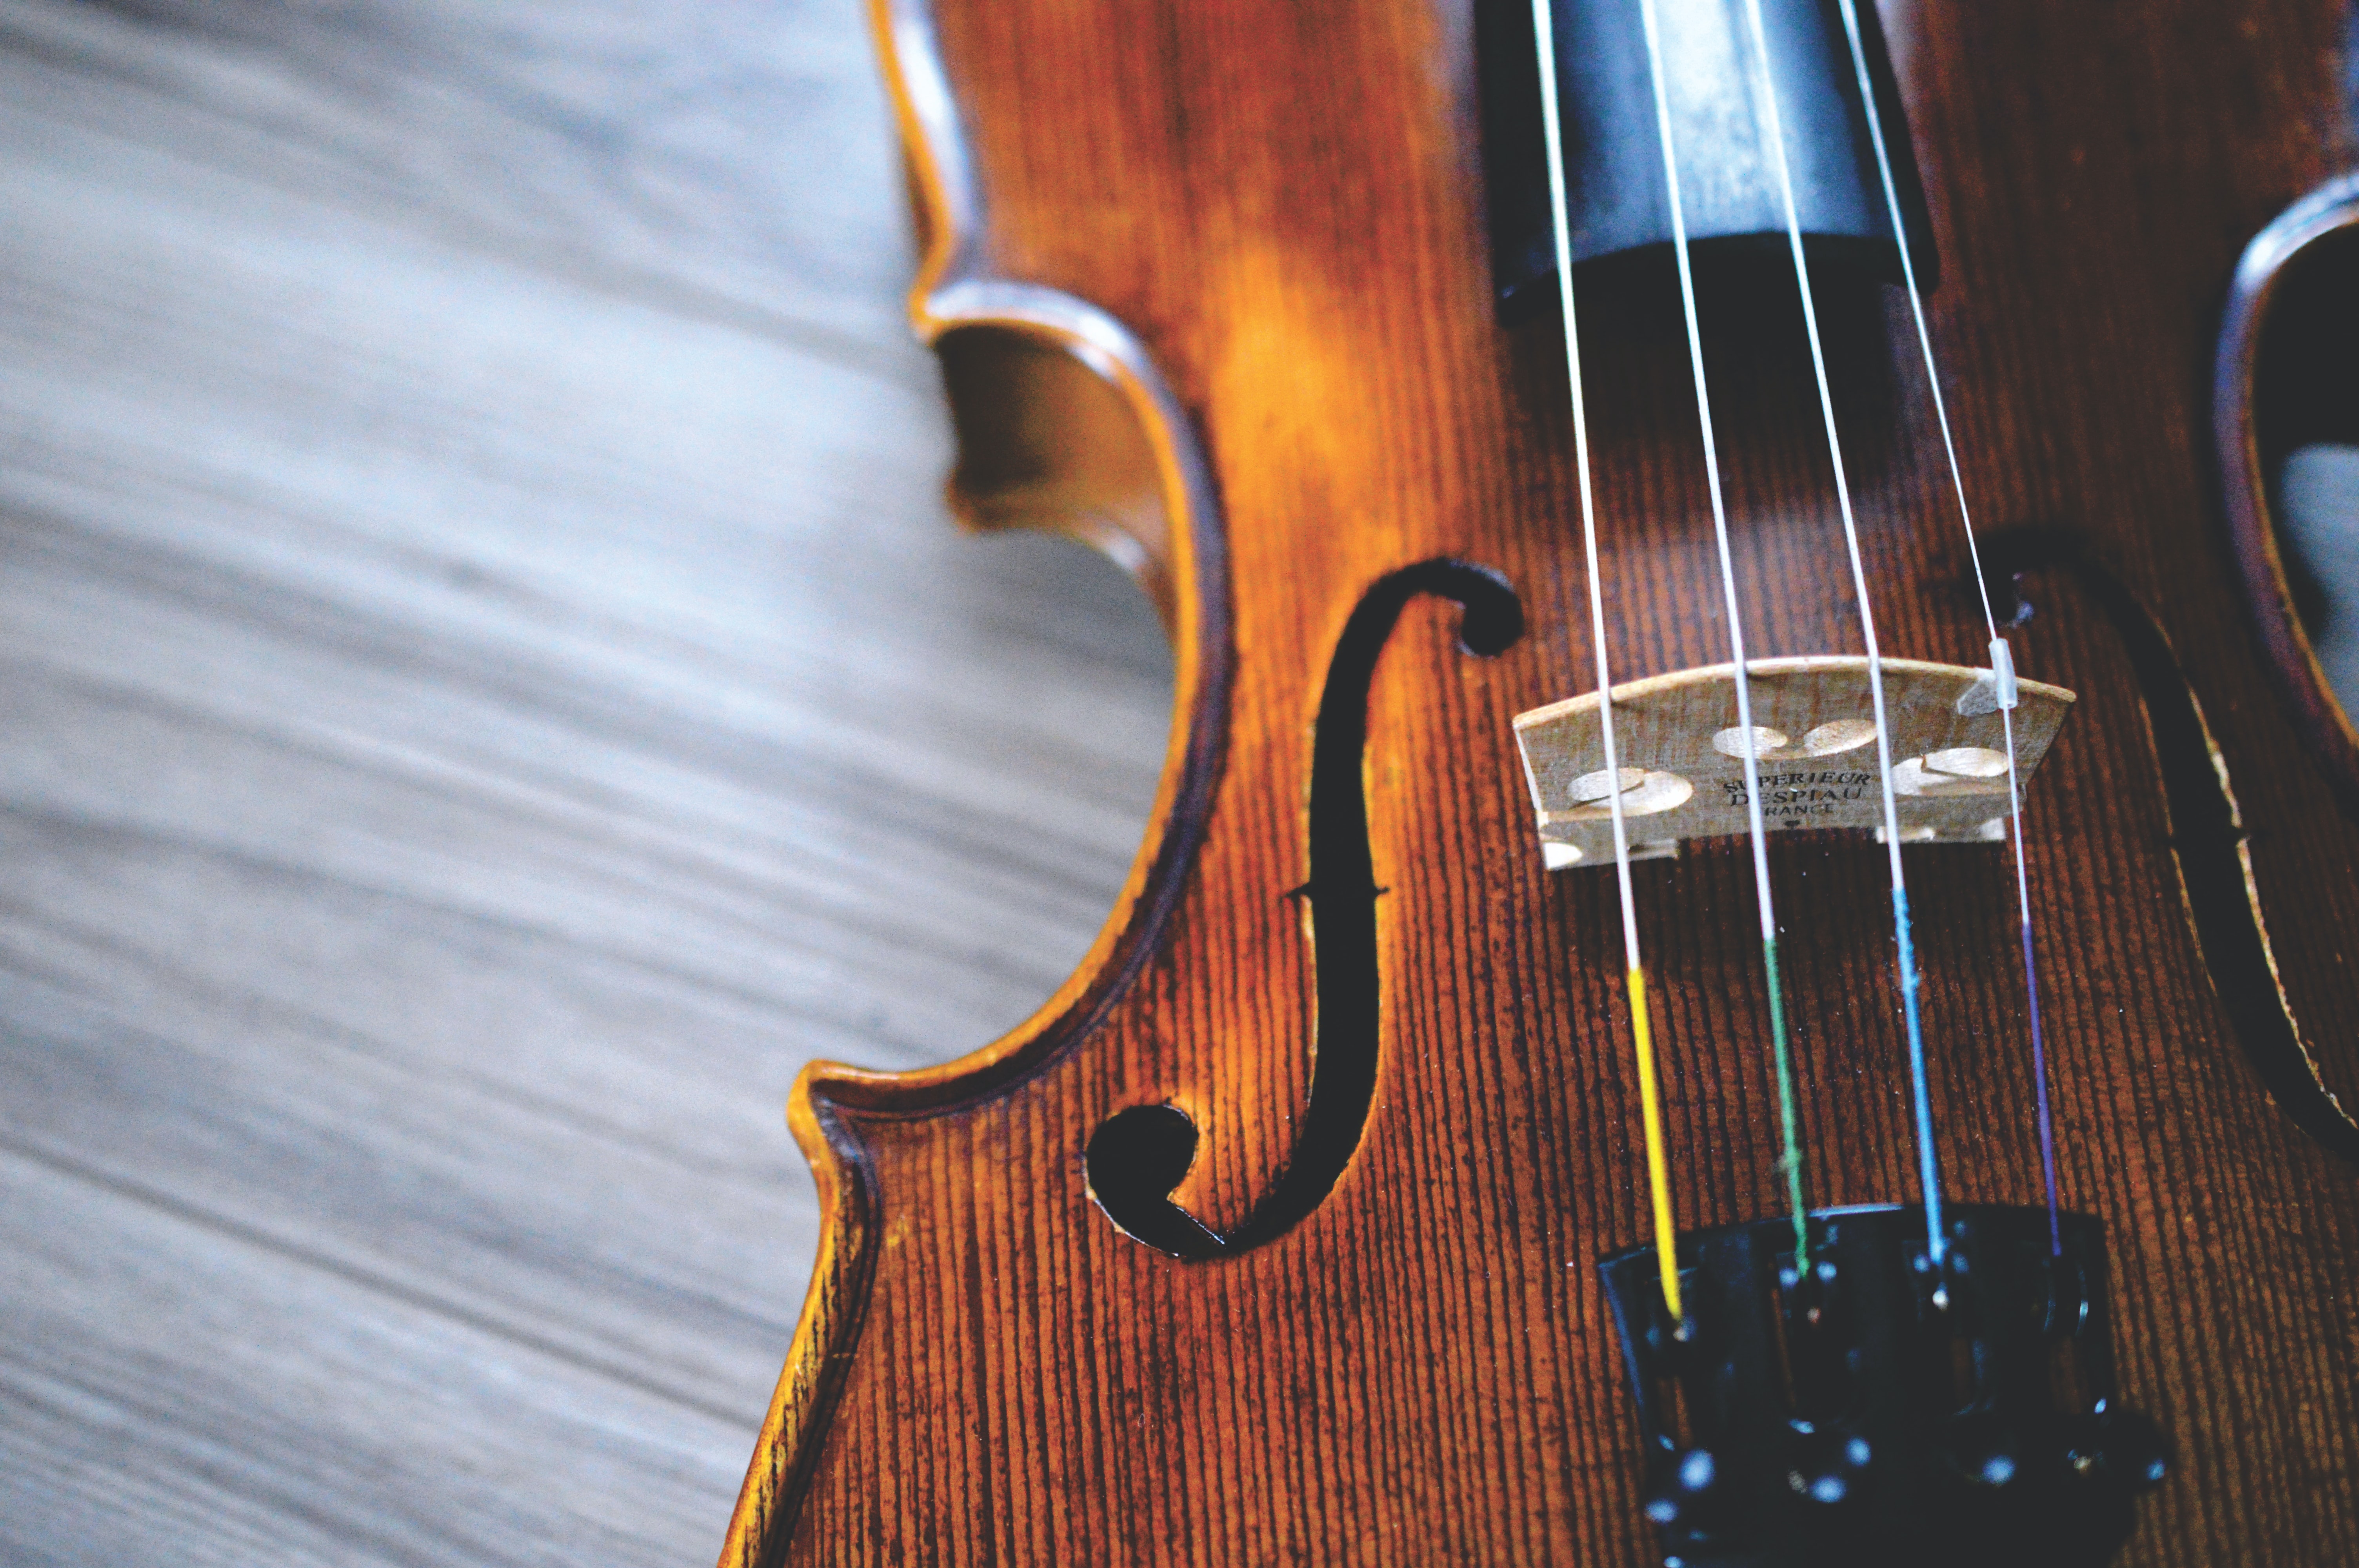 Při výběru houslí si zjistěte především správnou velikost a kvalitu zpracování